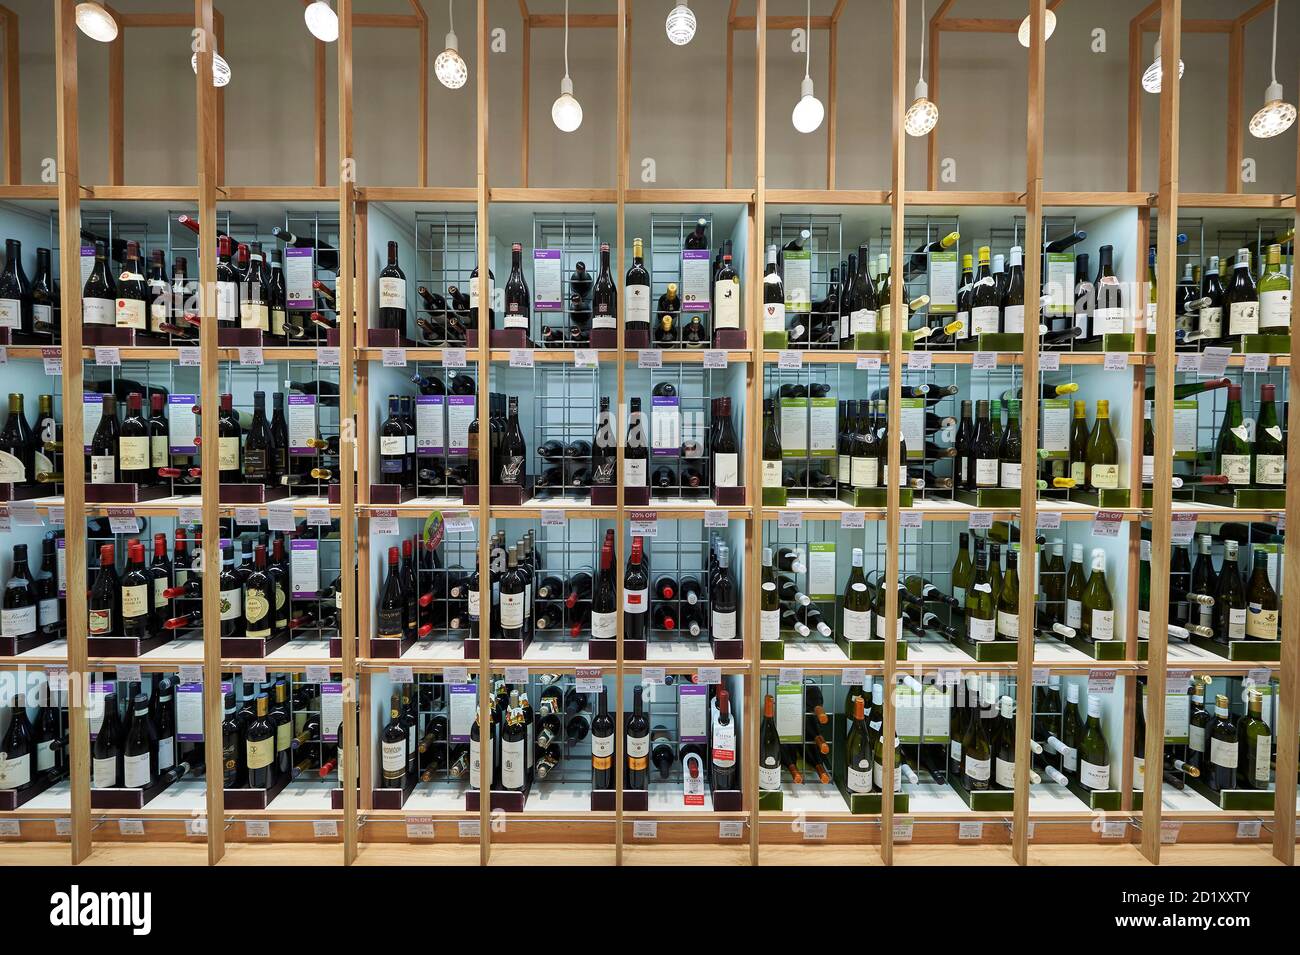 Exposition de vin au magasin de détail de Waitrose à Horesham, dans le sud-est de l'Angleterre, au Royaume-Uni Banque D'Images